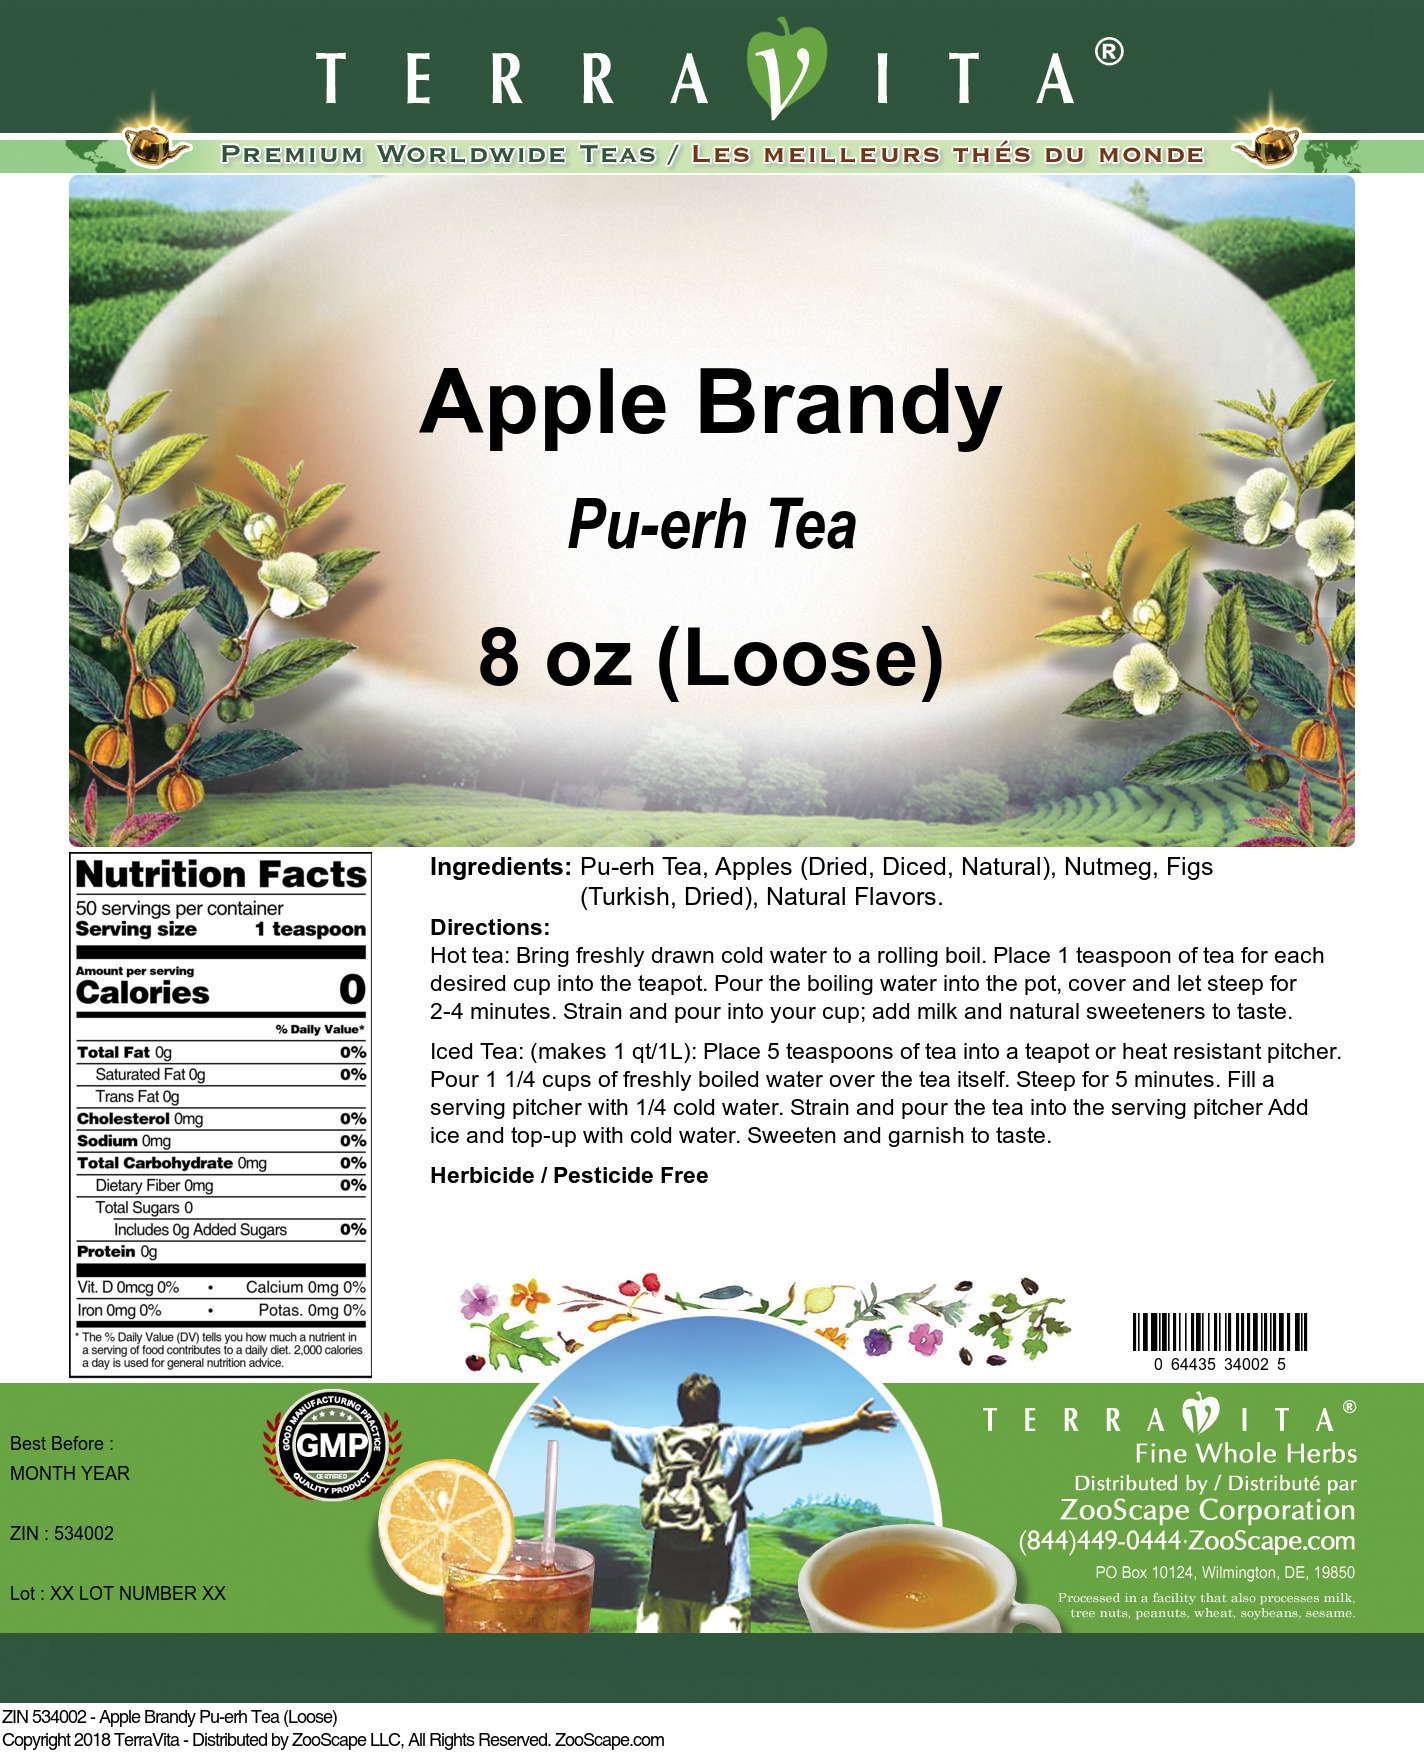 Apple Brandy Pu-erh Tea (Loose) - Label